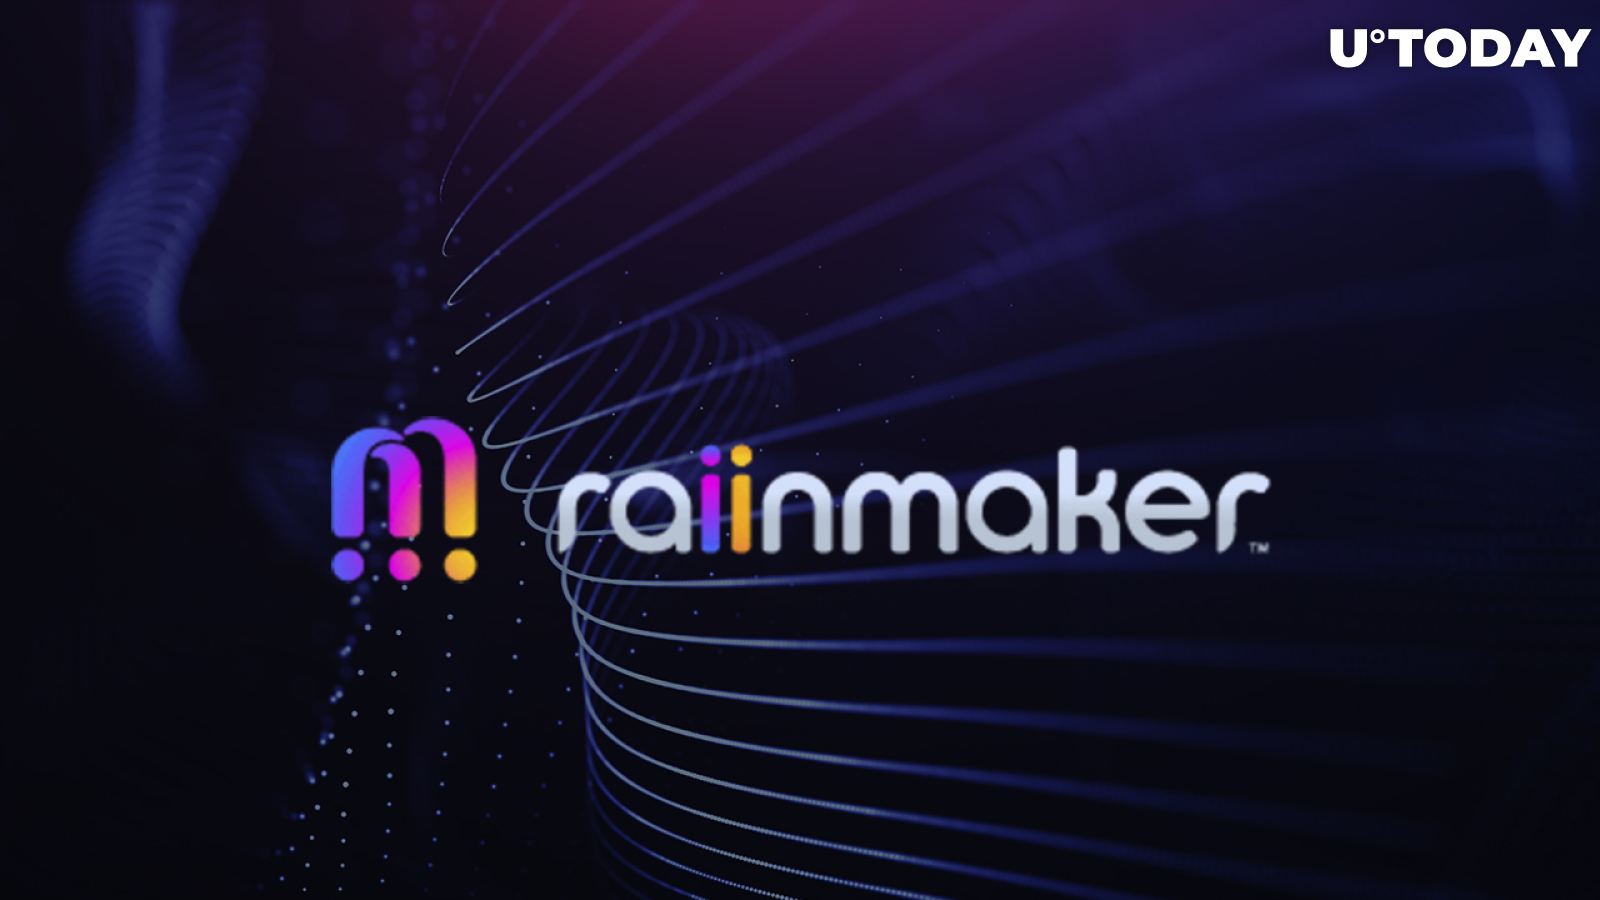 Raiinmaker Social Content Platform Announces New CFO, Launches Native COIIN Token